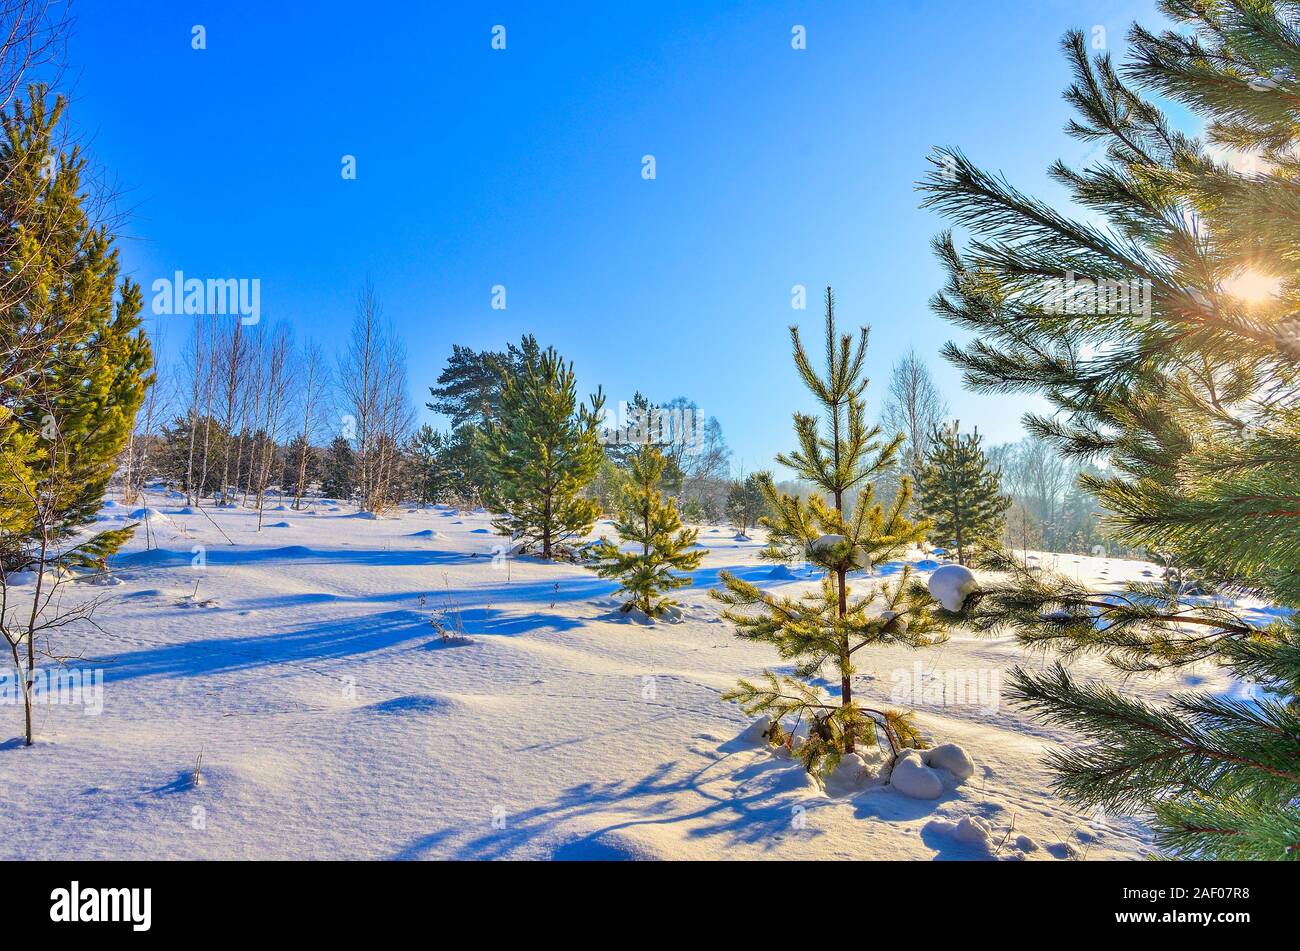 In inverno il paesaggio soleggiato nei giovani la foresta di conifere, raggi di sole attraverso il verde di aghi di pino rami incontaminata puro bianco della neve e il blu del cielo. Wi Foto Stock